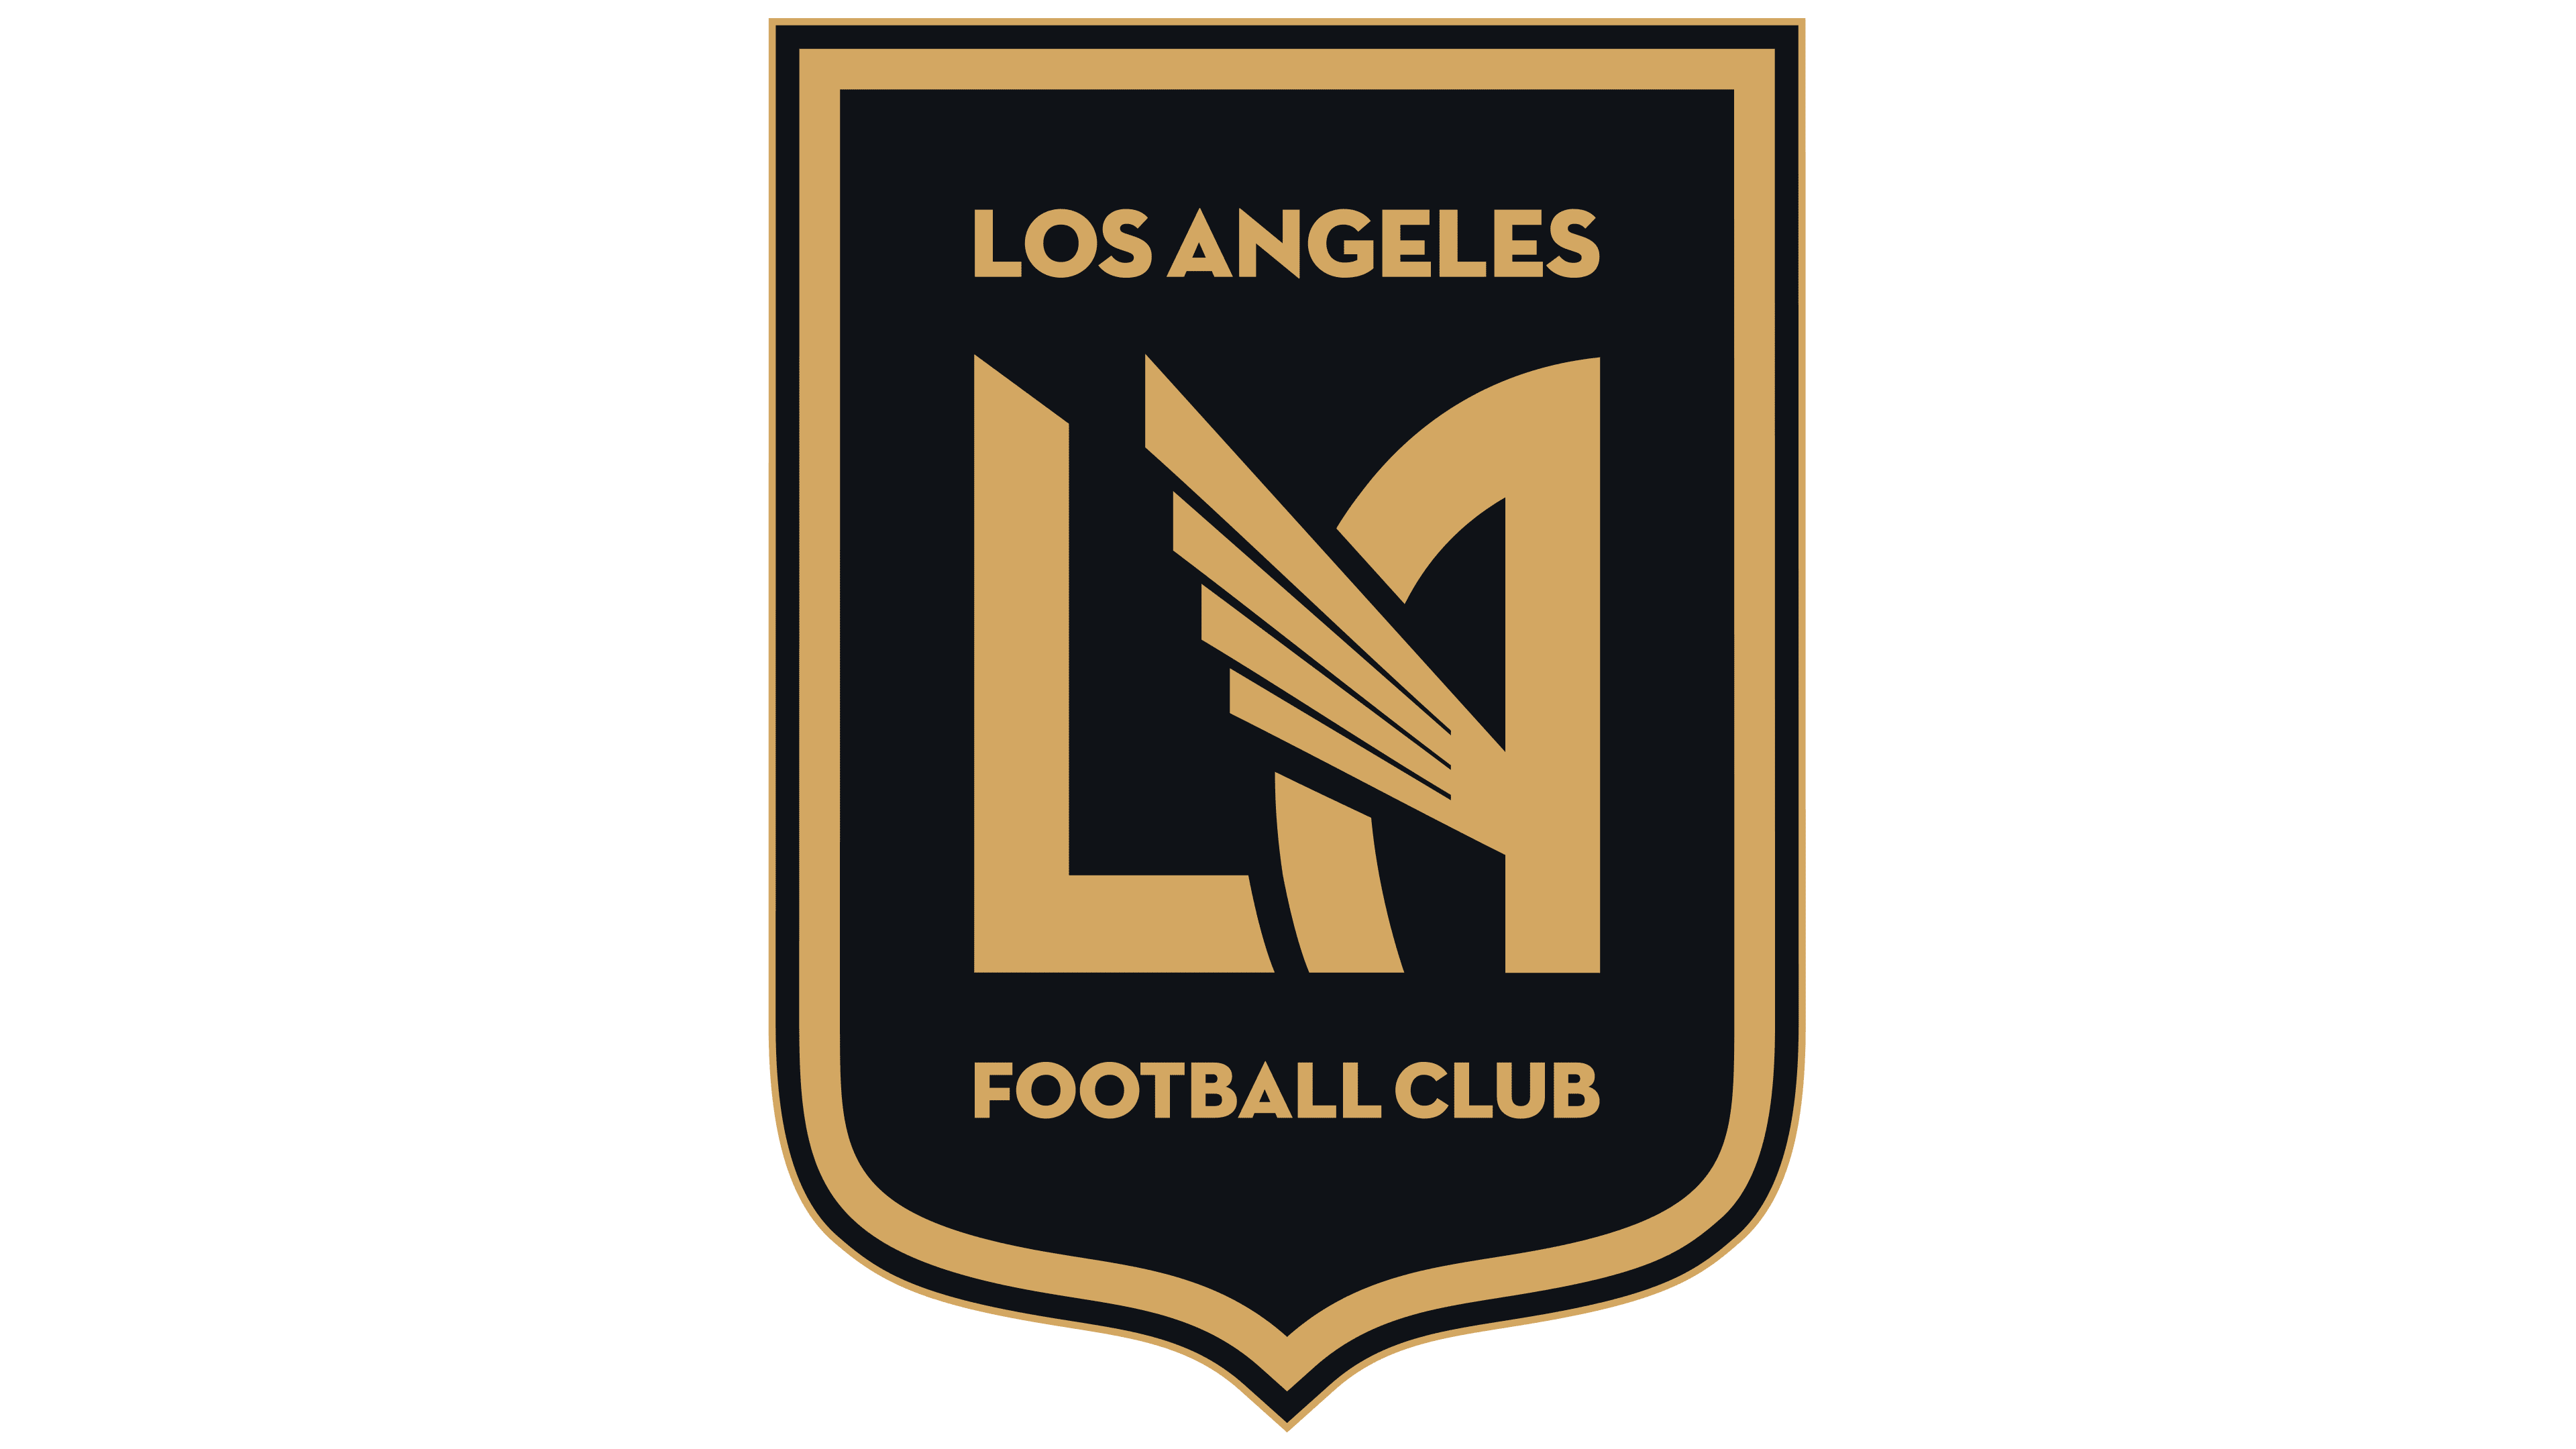 Los Angeles Football Club logo